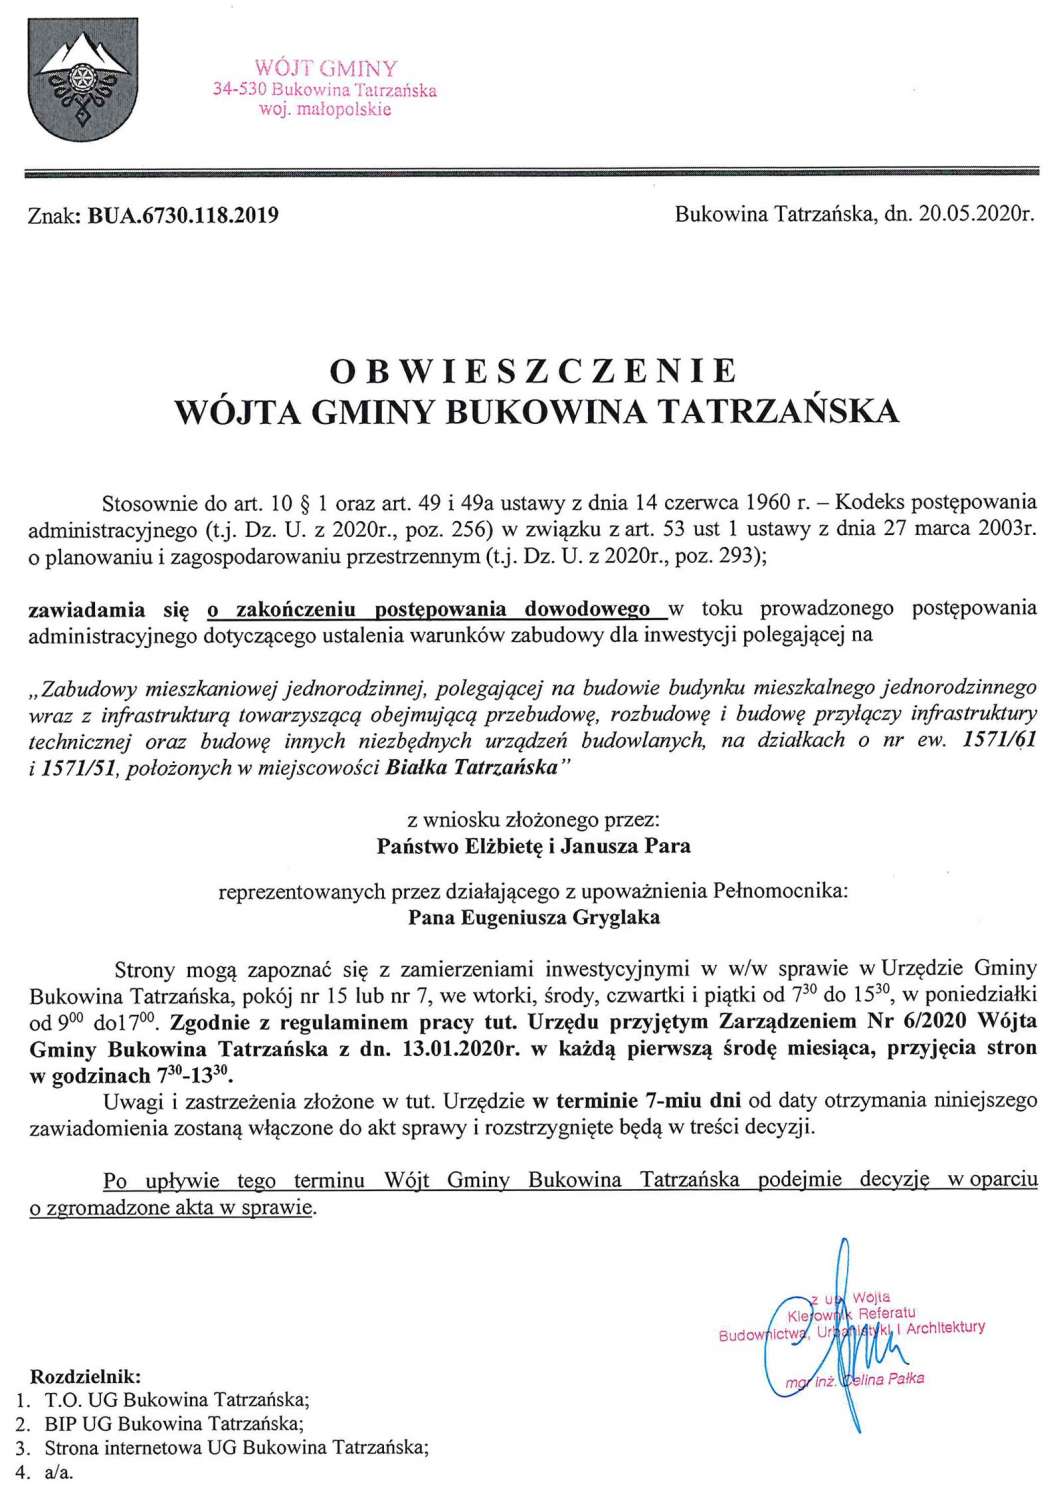 Obwieszczenie Wójta Gminy Bukowina Tatrzańska BUA 6730.118.2019